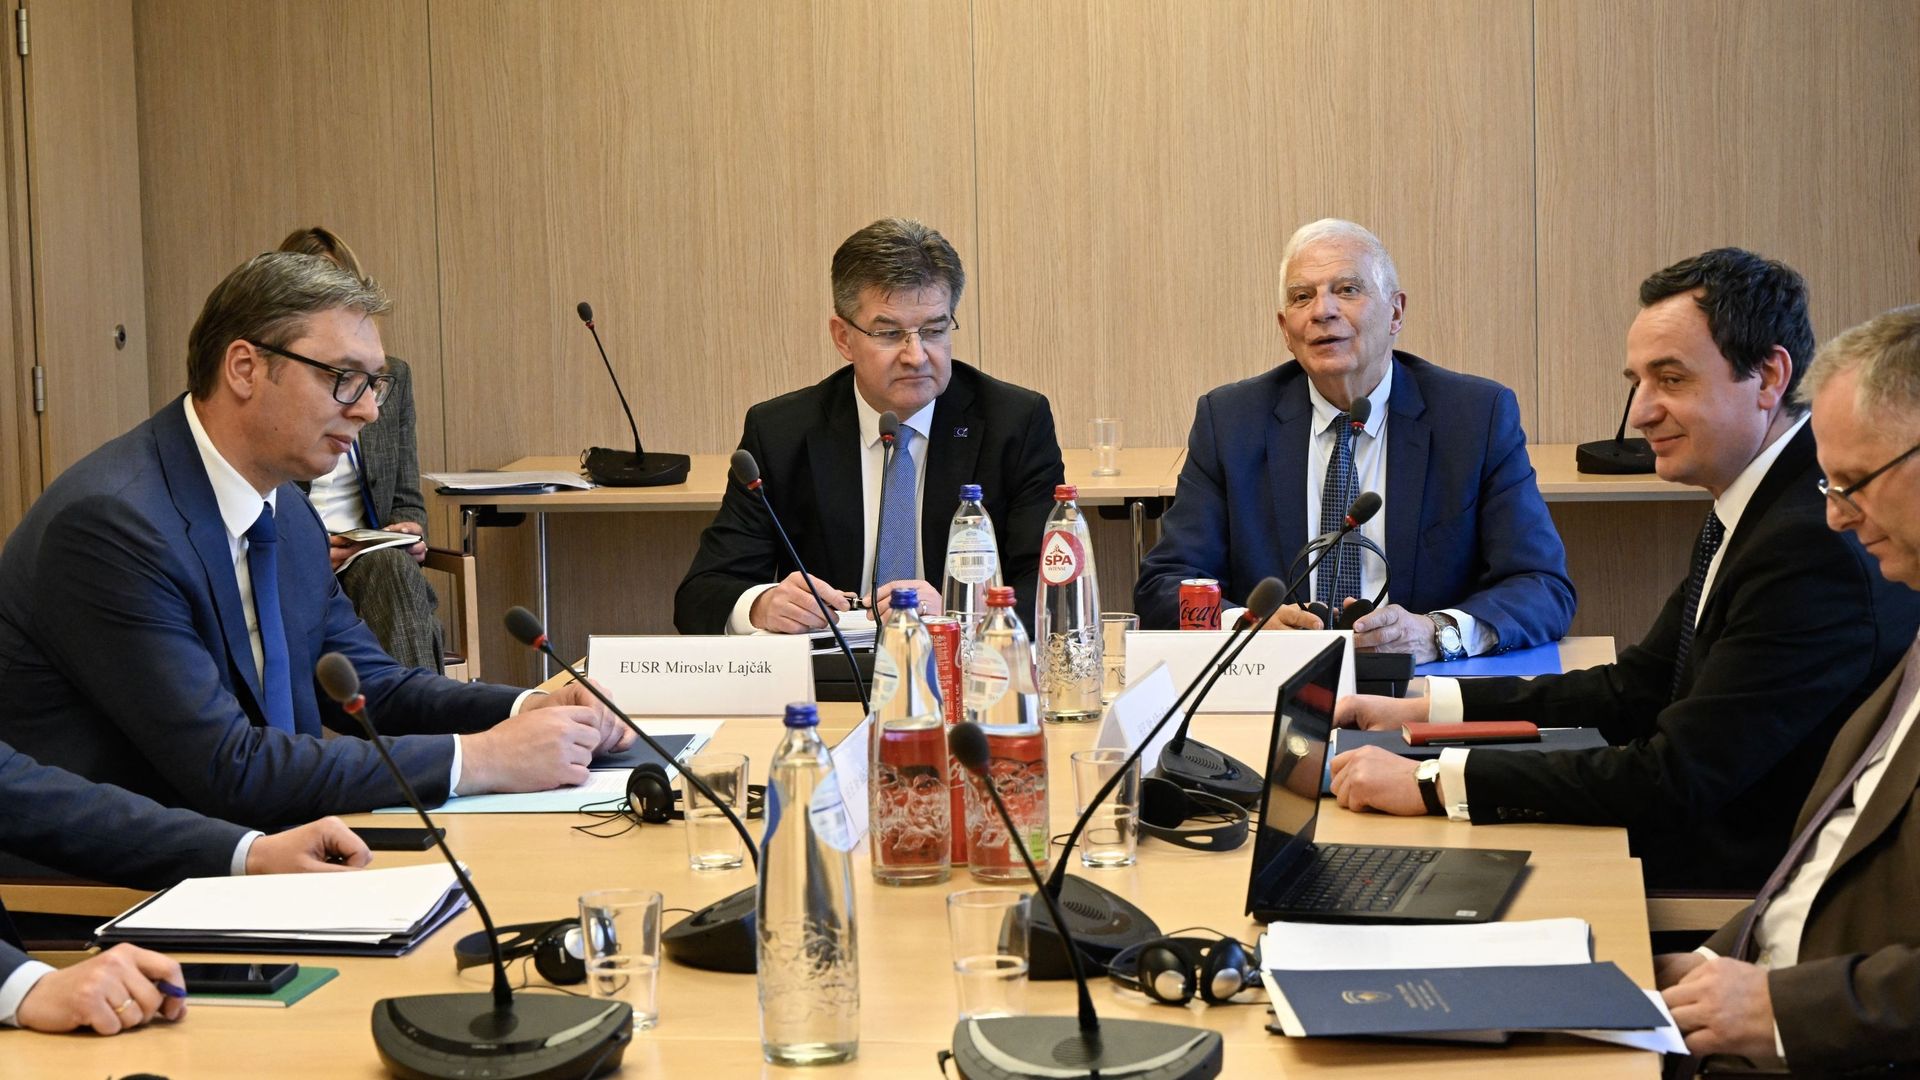 Josep Borrell, le chef de la diplomatie européenne et Miroslav Lacjak, l’envoyé spécial de l’UE pour le dialogue entre Belgrade et Pristina participent aux négociations avec le président serbe Aleksander Vucic (à gauche) et le Premier ministre kosovar Alb